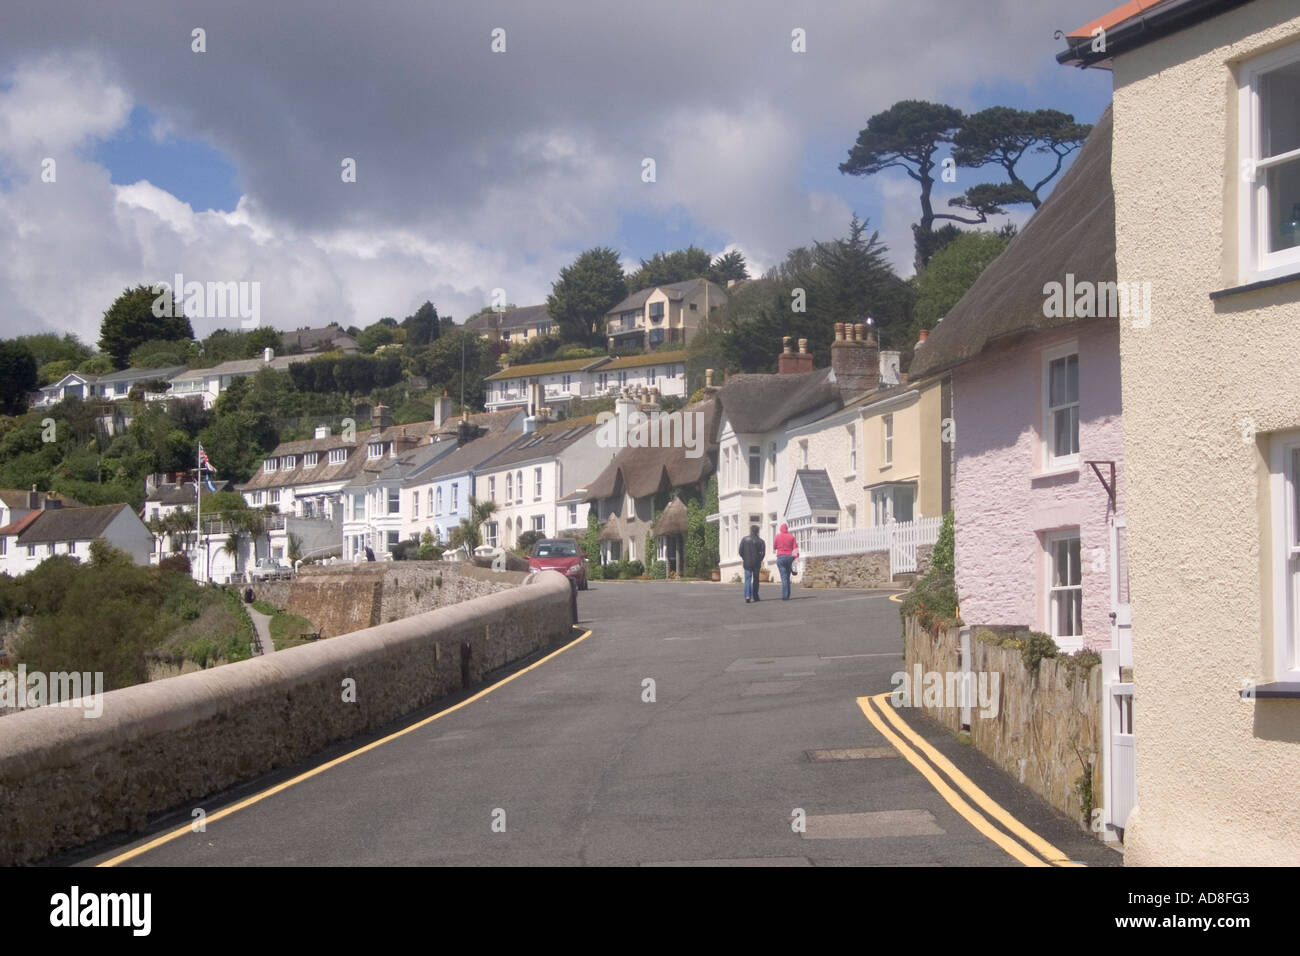 Street scene, St Mawes, Cornwall, England, UK, Europe Stock Photo